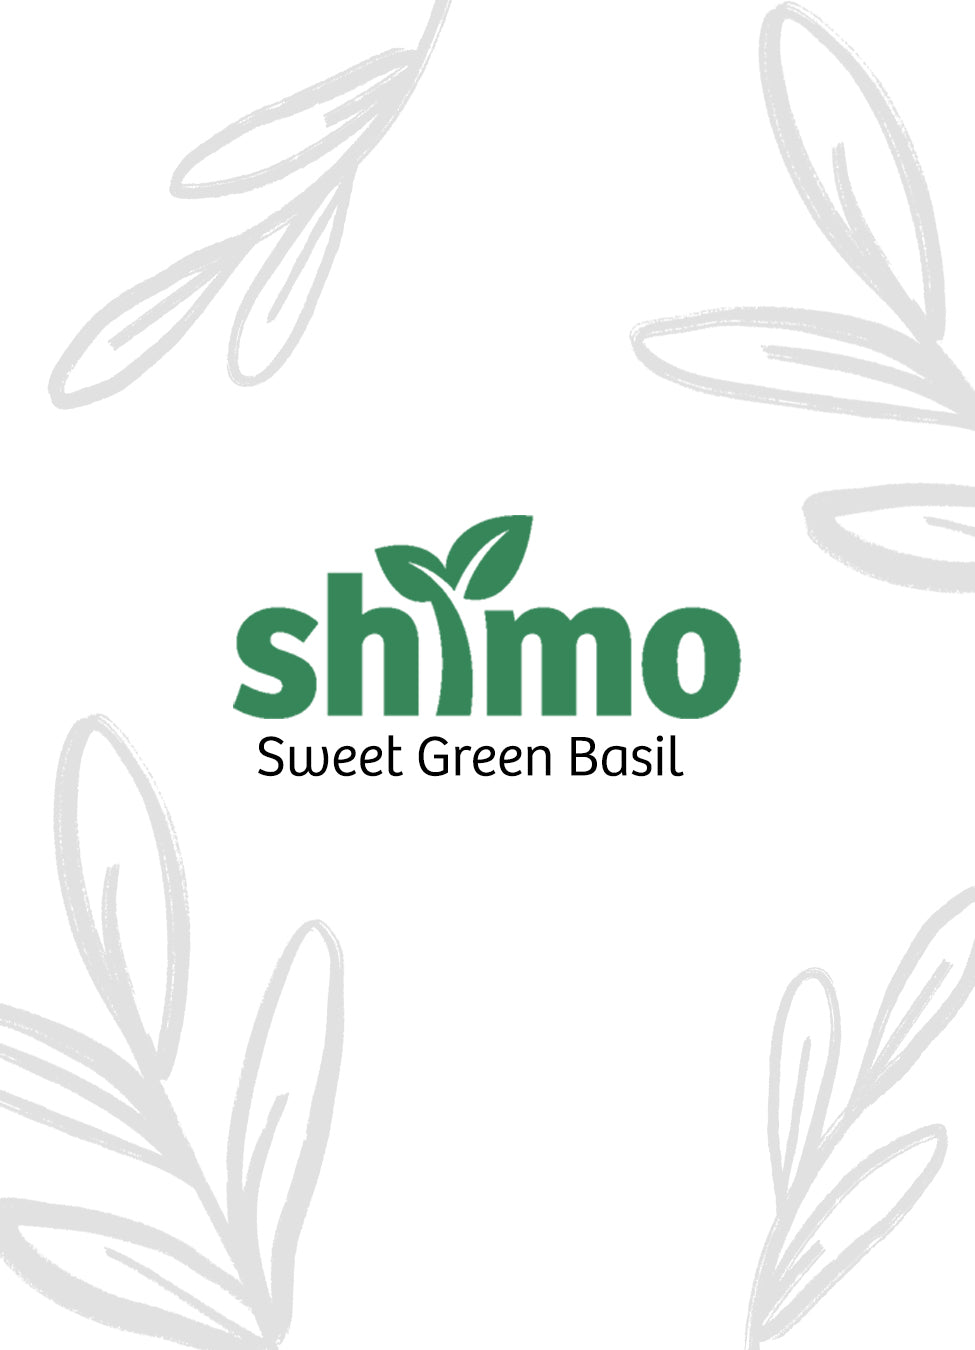 Shimo Seeds